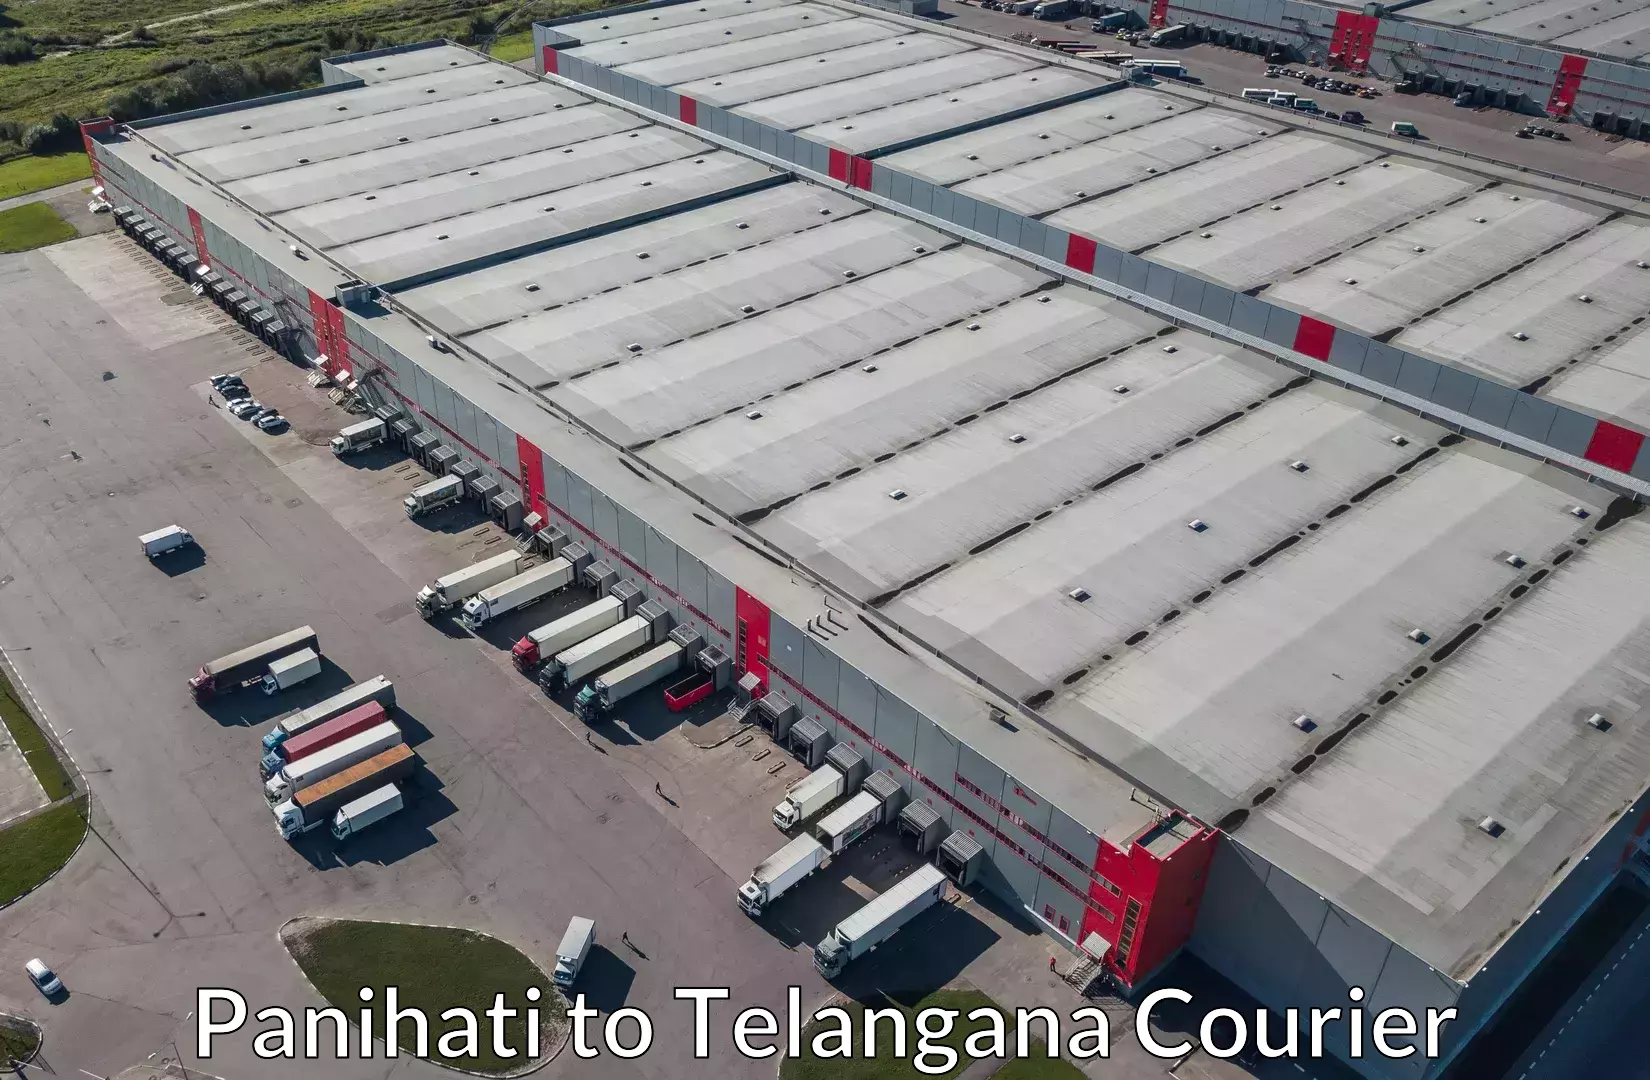 Luggage shipment processing in Panihati to Yellareddipet